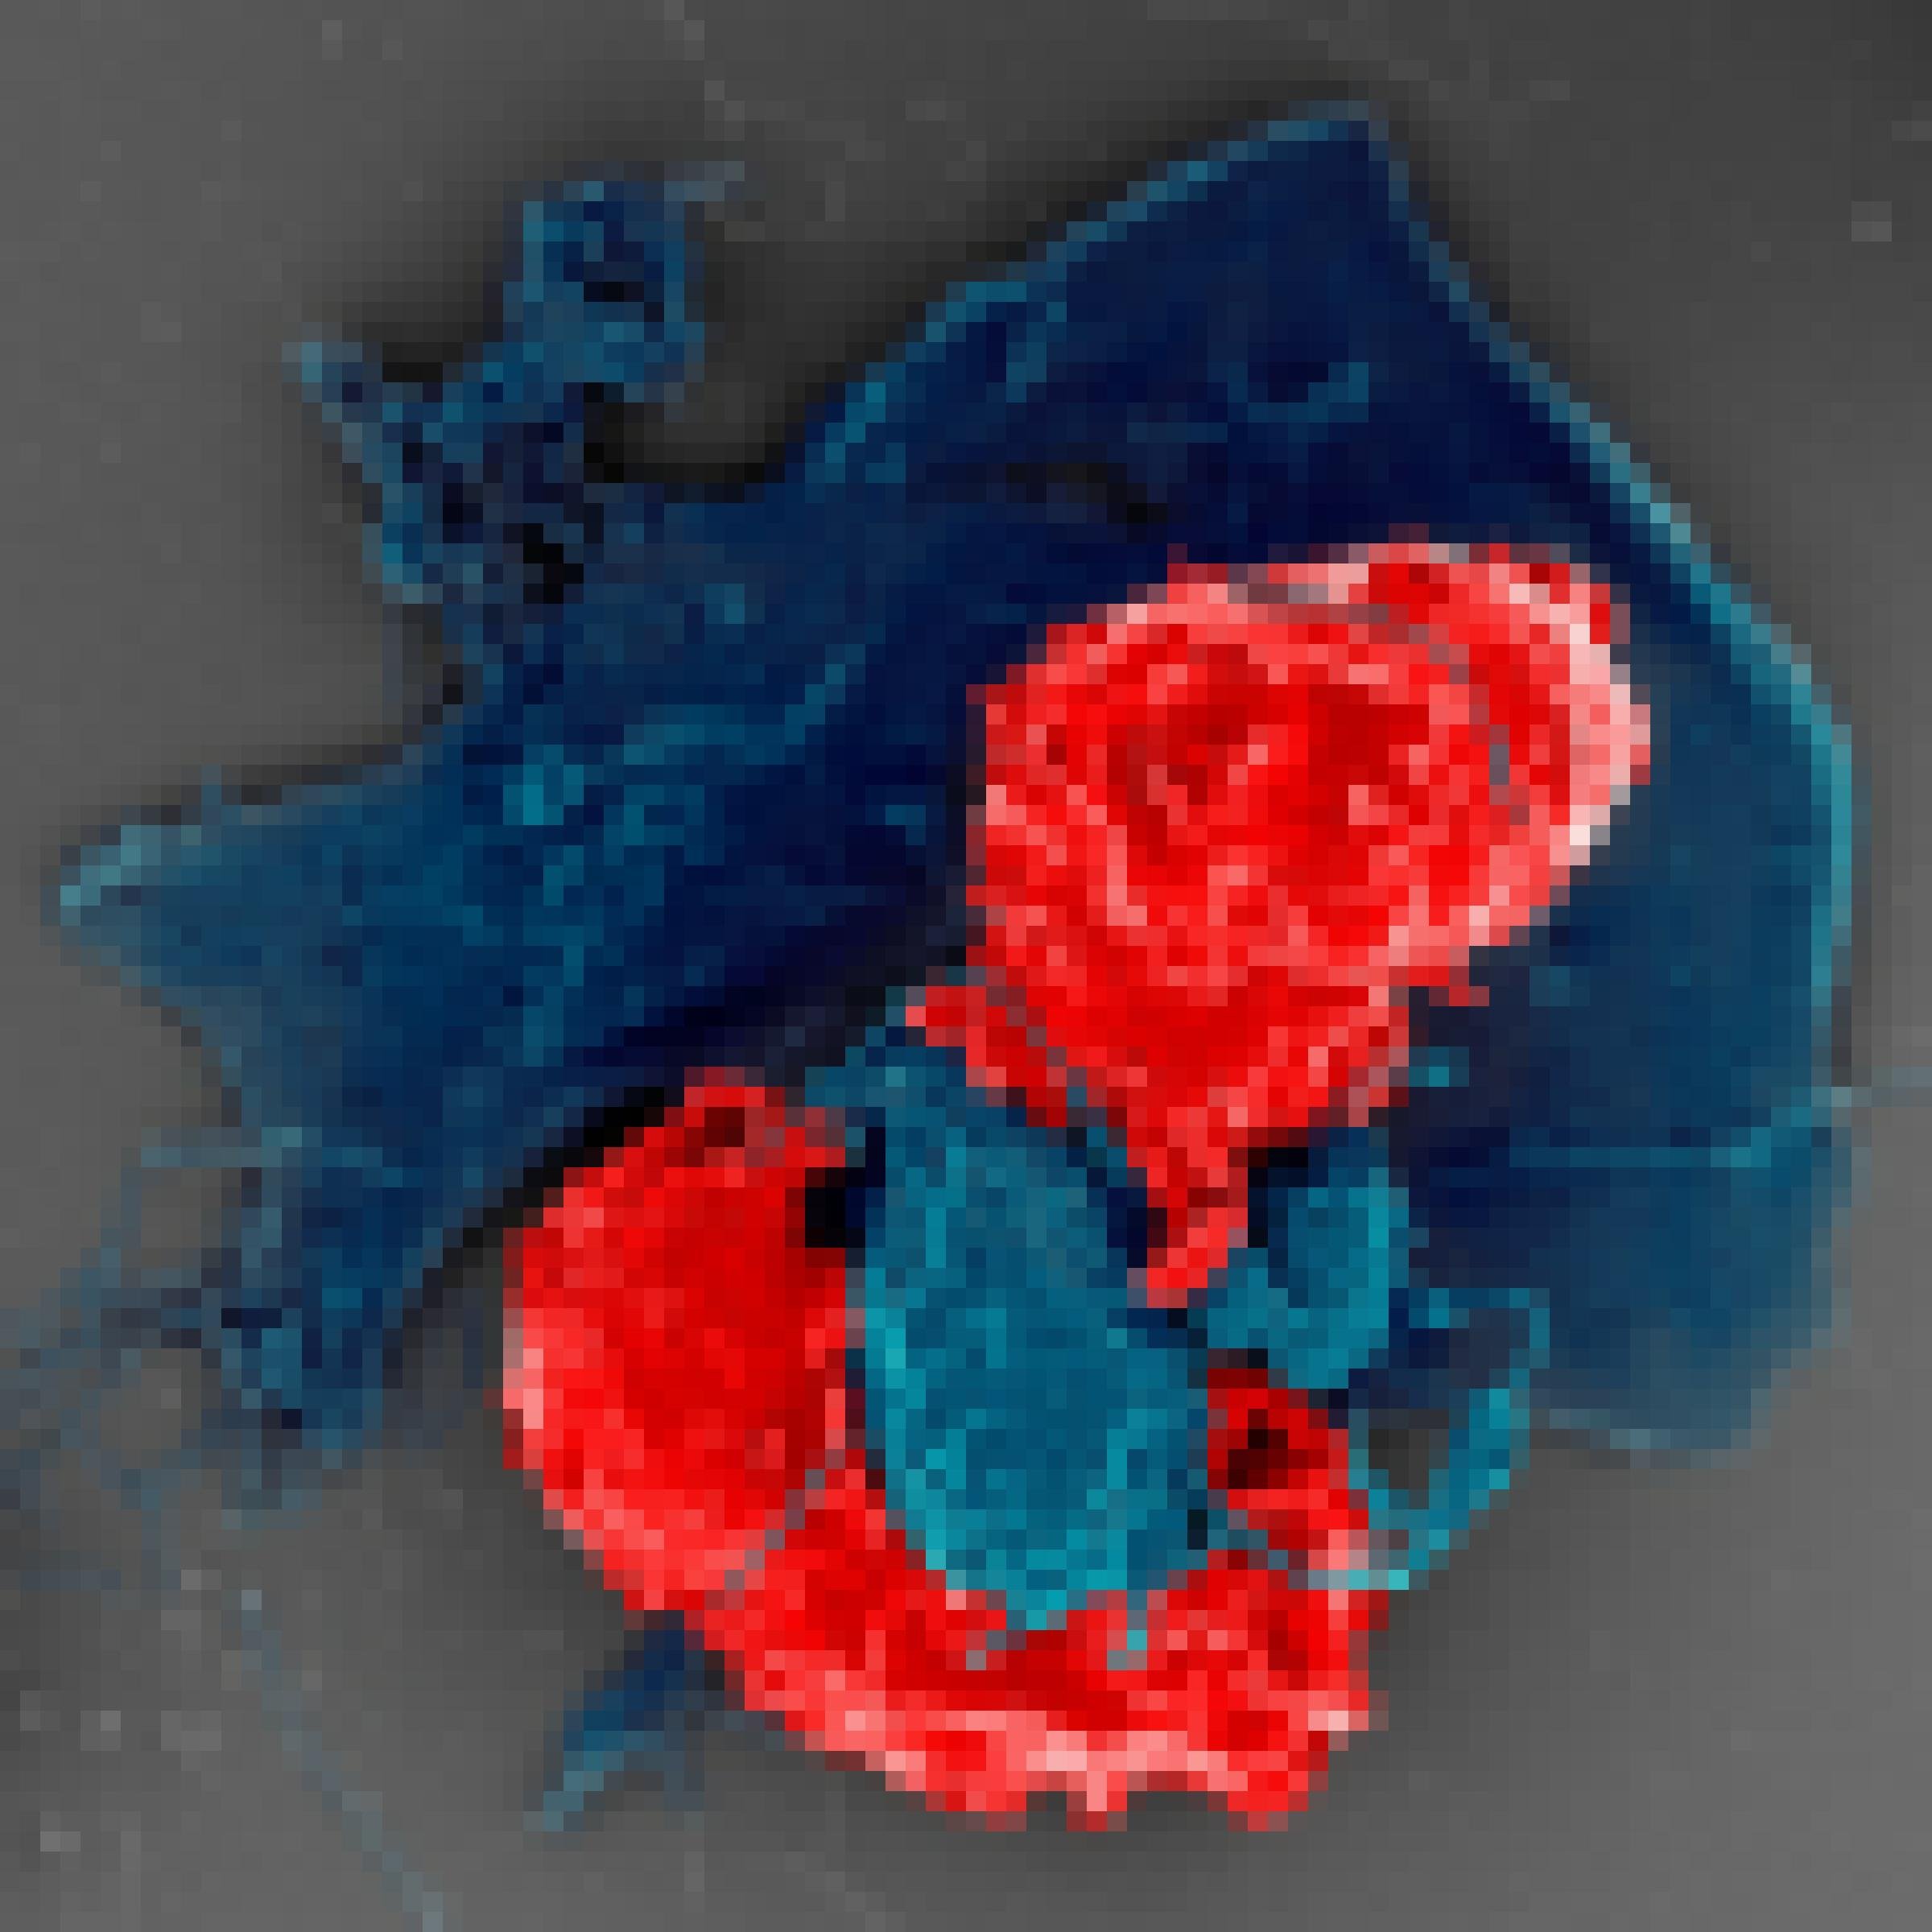 Elektronenmikroskopische Aufnahme einer regulatorischen T-Zelle, die hier rot angefärbt ist, in Kontakt mit einer anderen Abwehrzelle (blau).